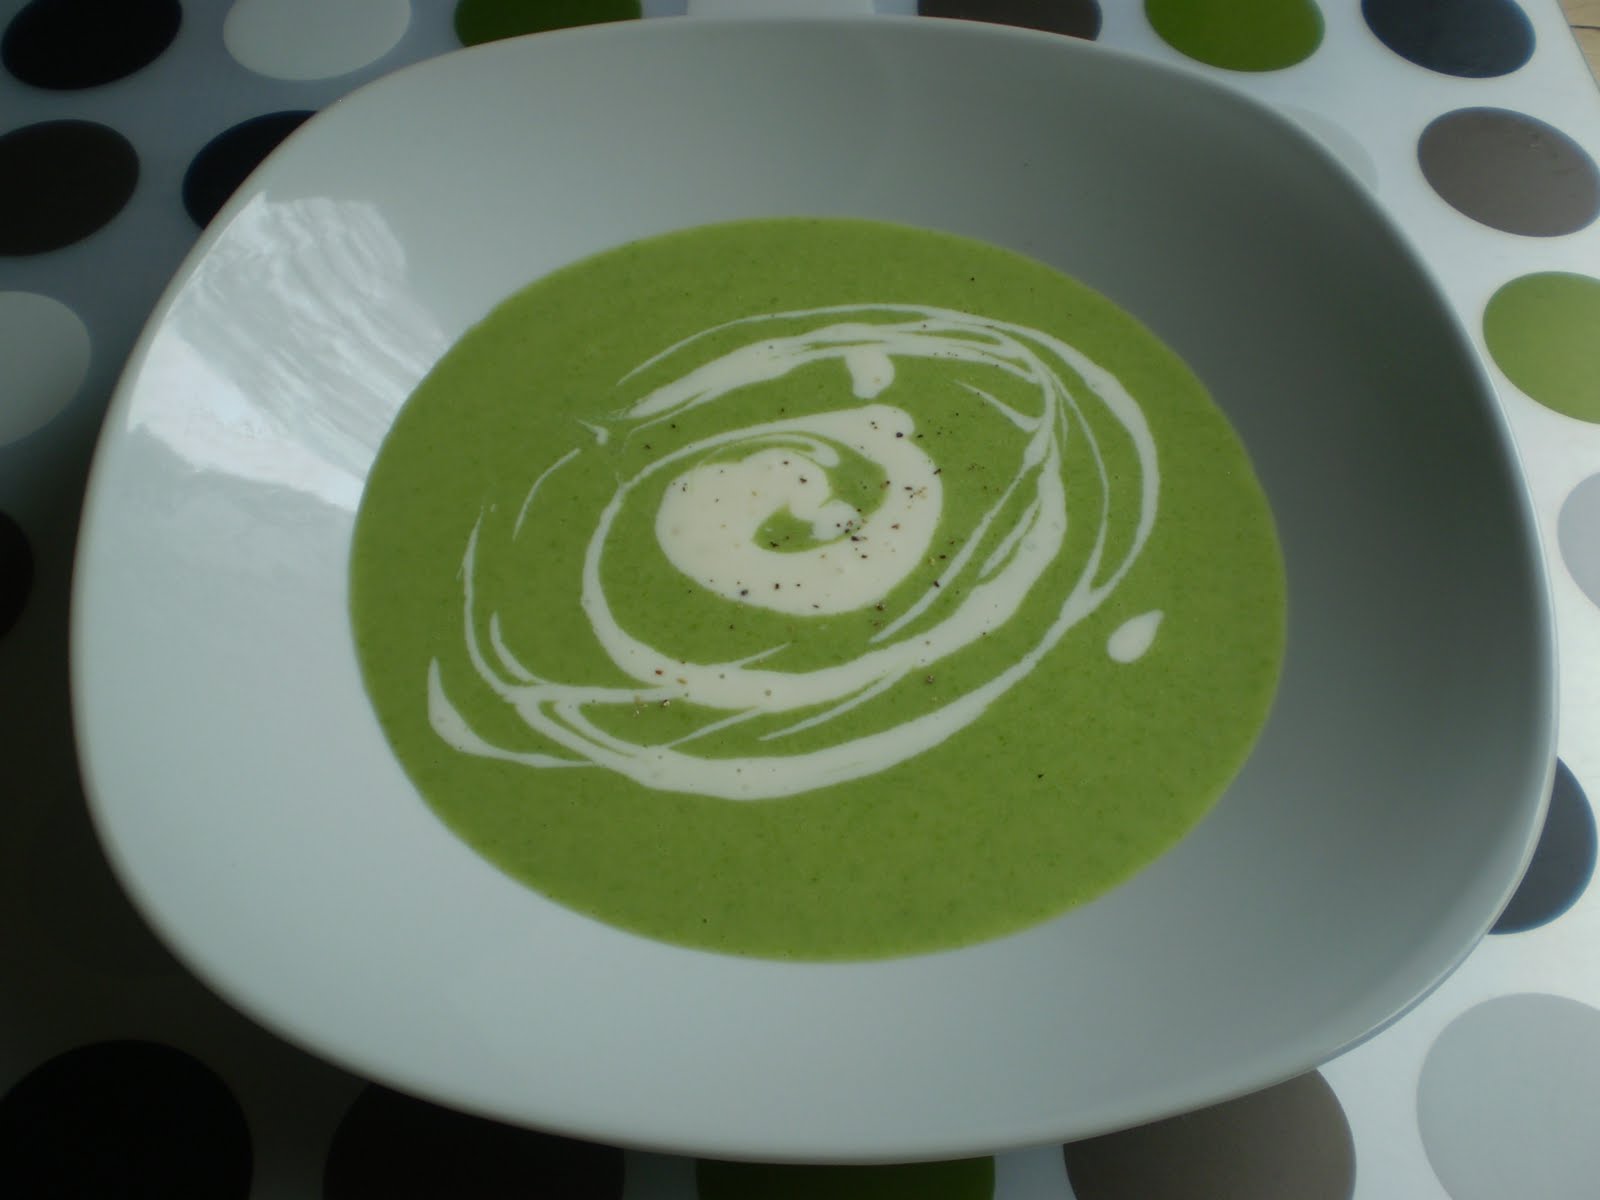 Cream of asparagus soup with crème fraîche